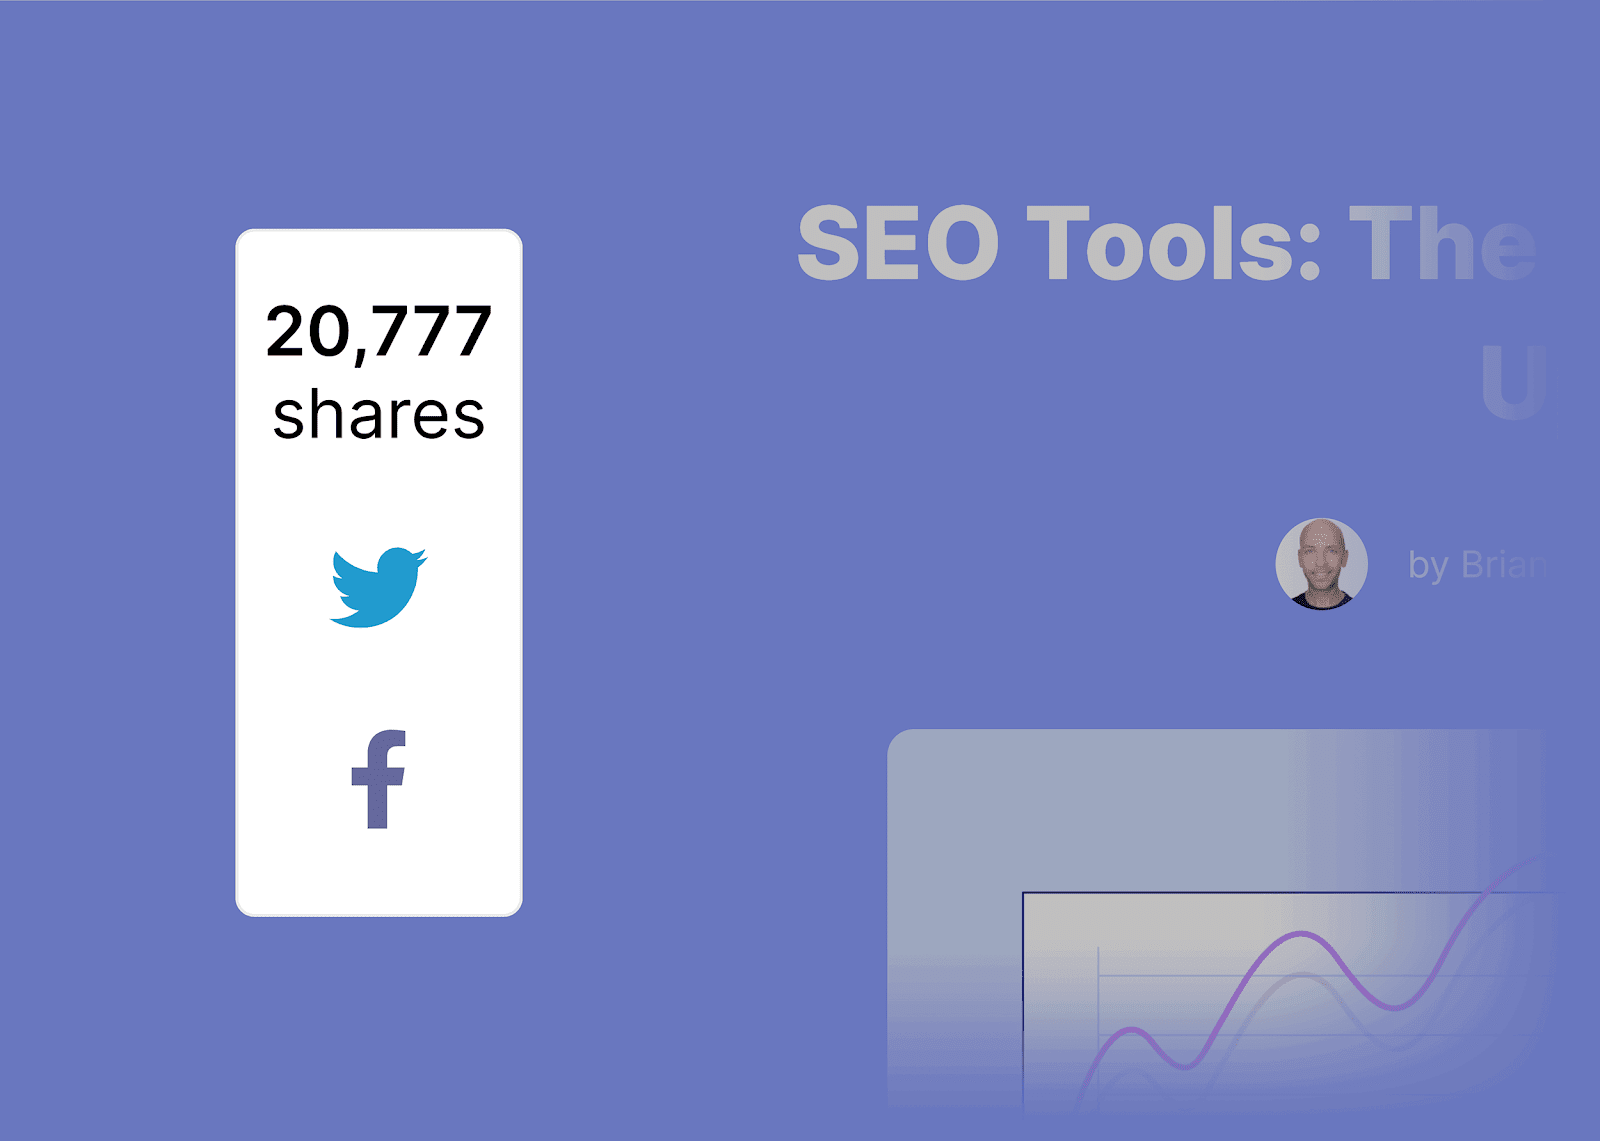 SEO tools post – Social shares